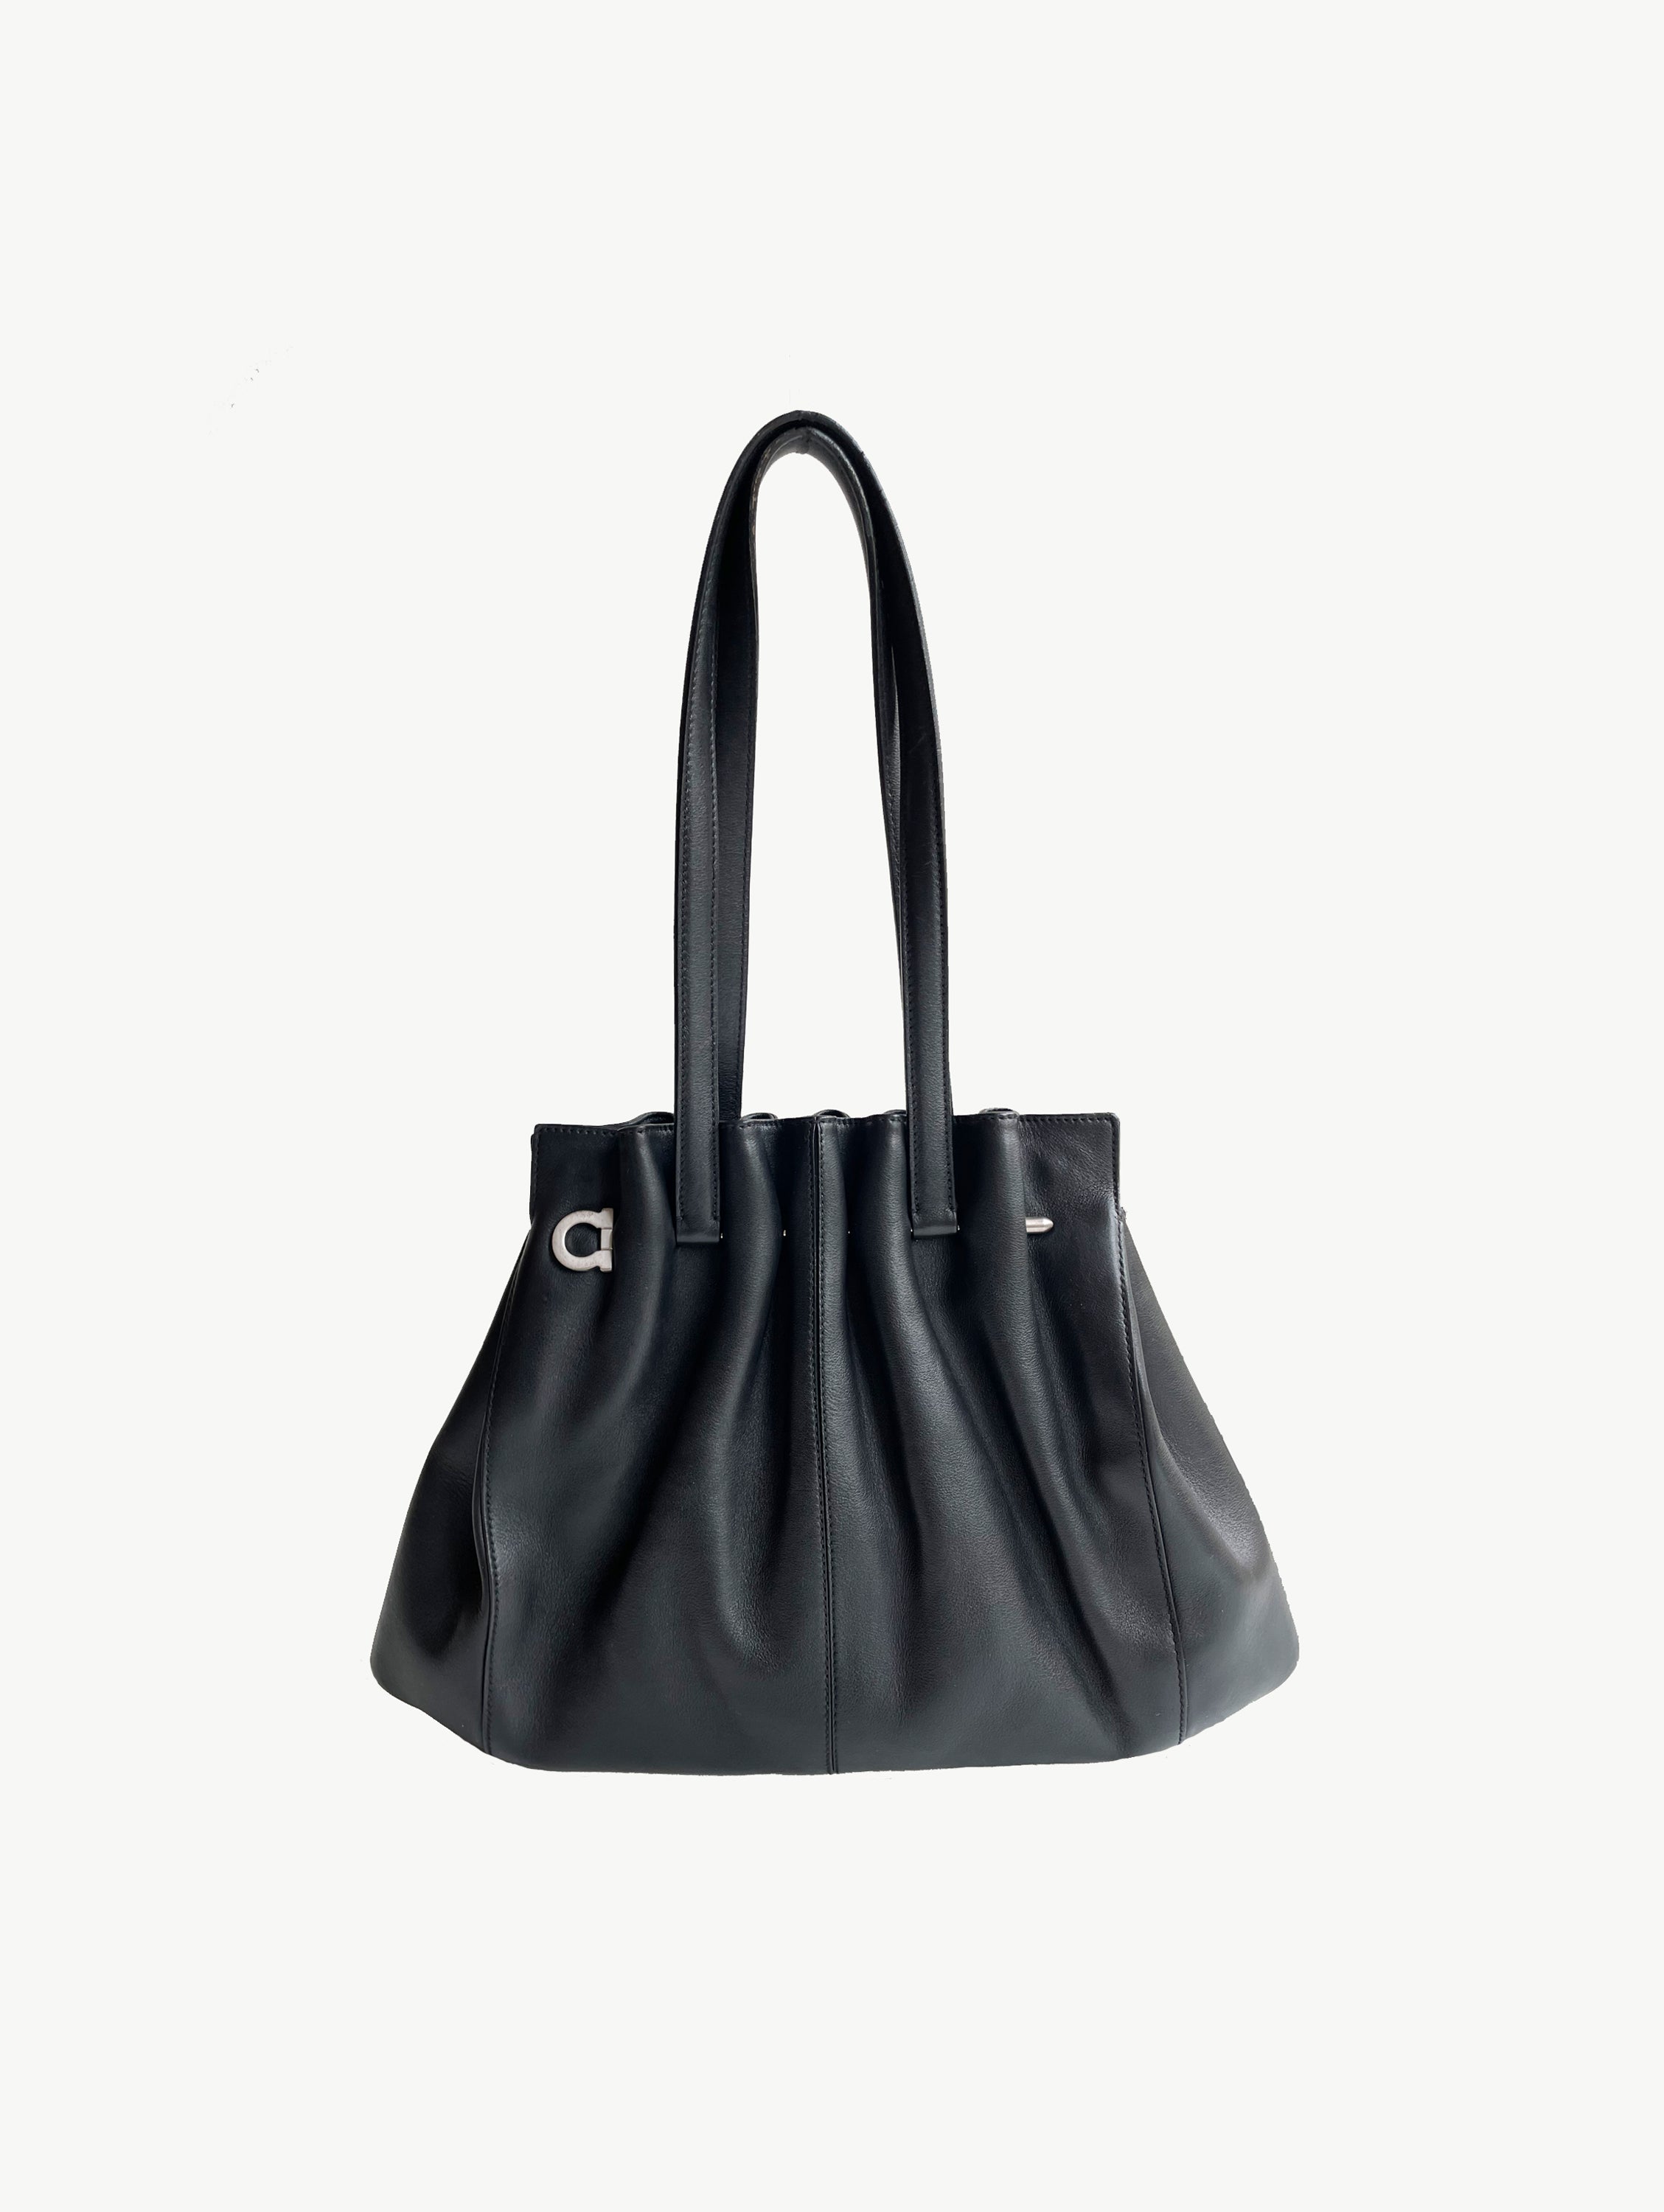 Vintage ‘hairpin’ handbag